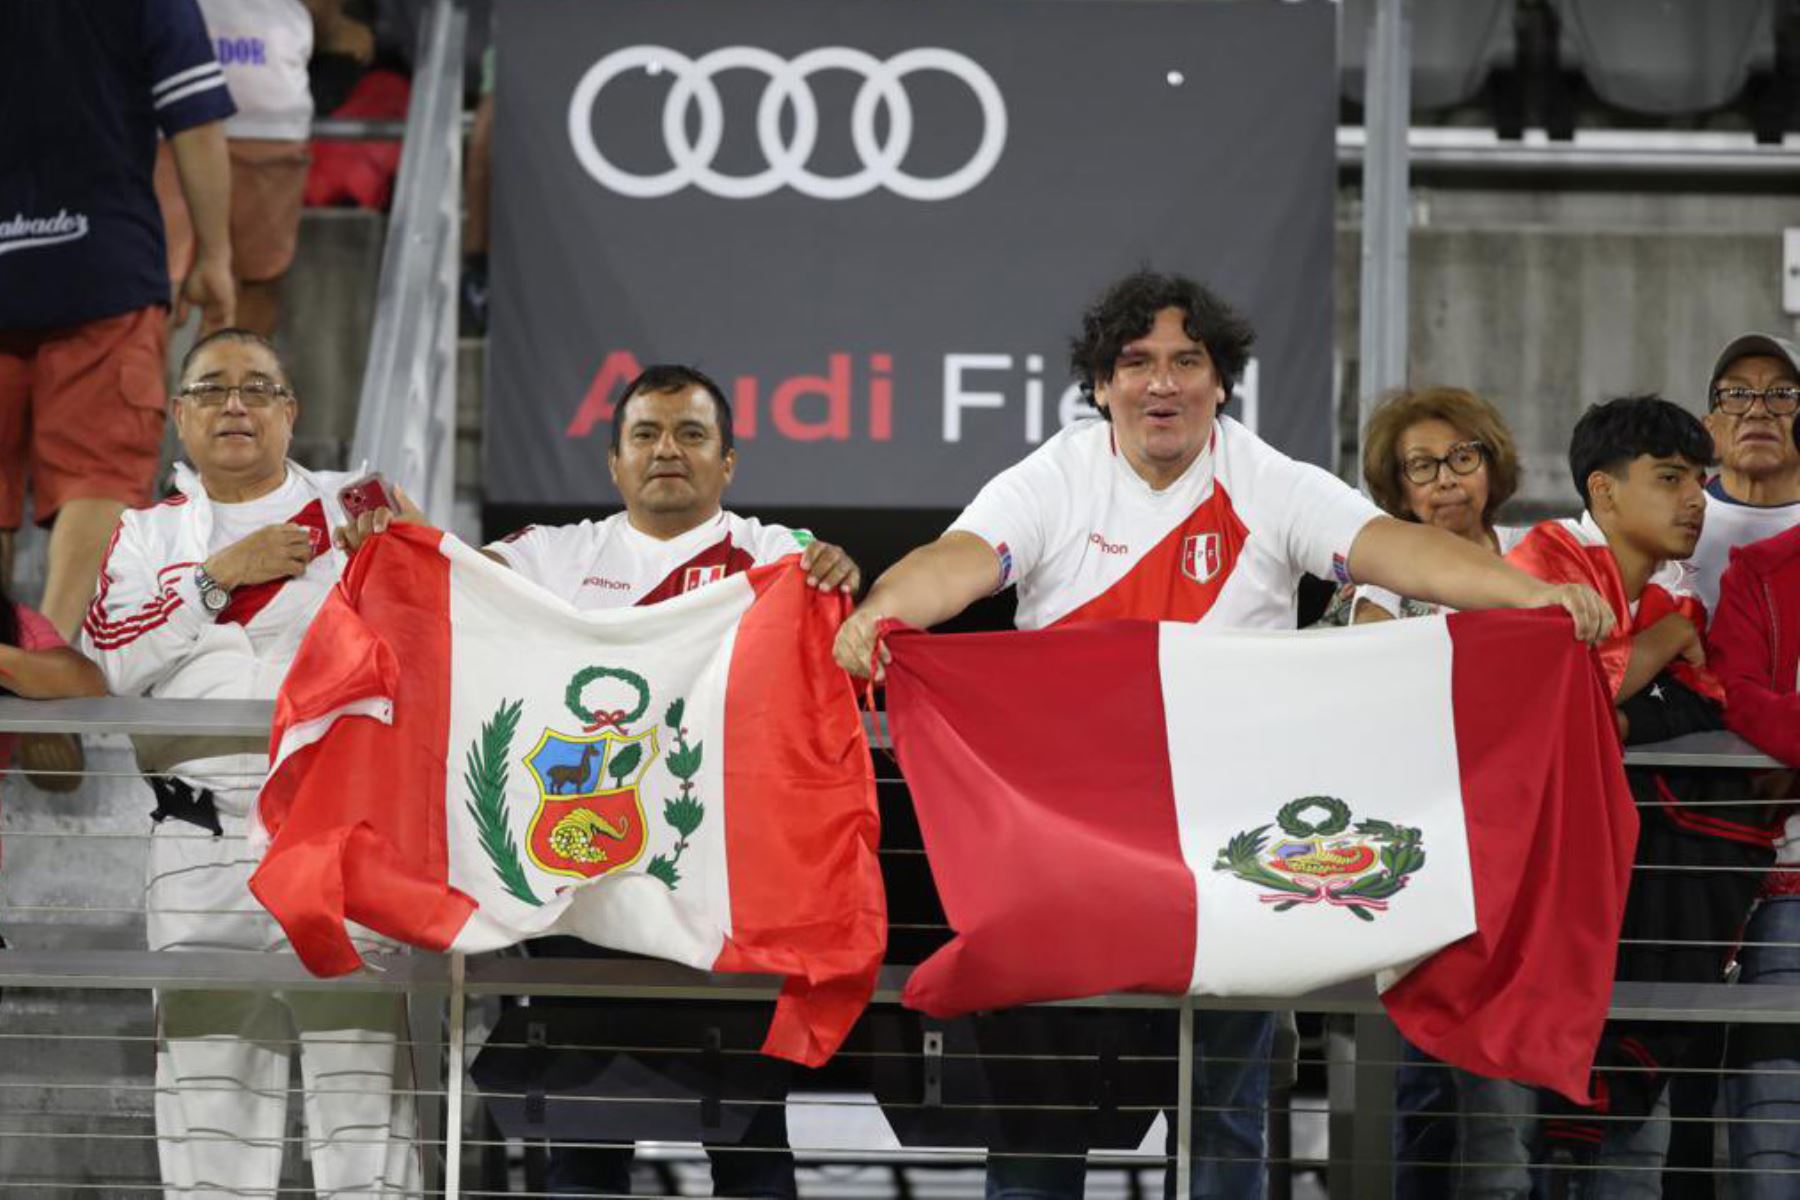 Imágenes previas al partido amistoso entre la Selección Peruana  vs la Selección de El Salvador que se enfrentan está noche  en el estadio Audi Field, en Washington D.C, en el segundo partido de la era Juan Reynoso.
Foto: Selección Peruana